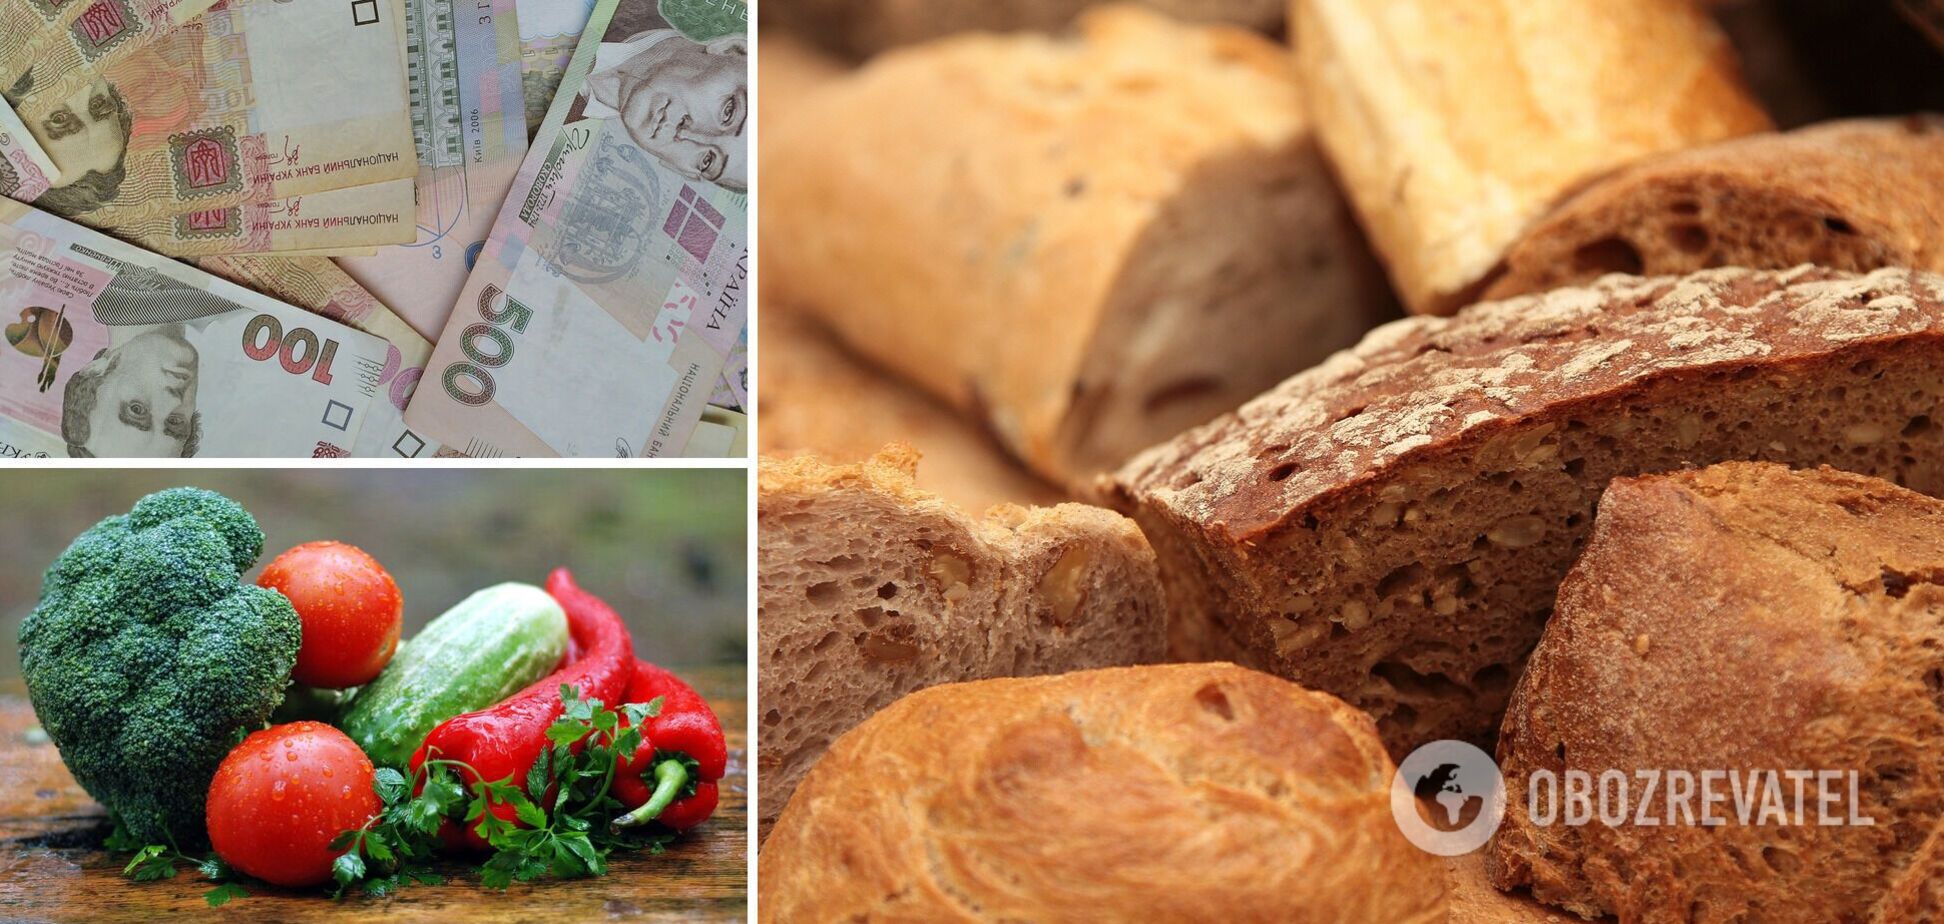 Хлеб и овощи в Украине подорожают